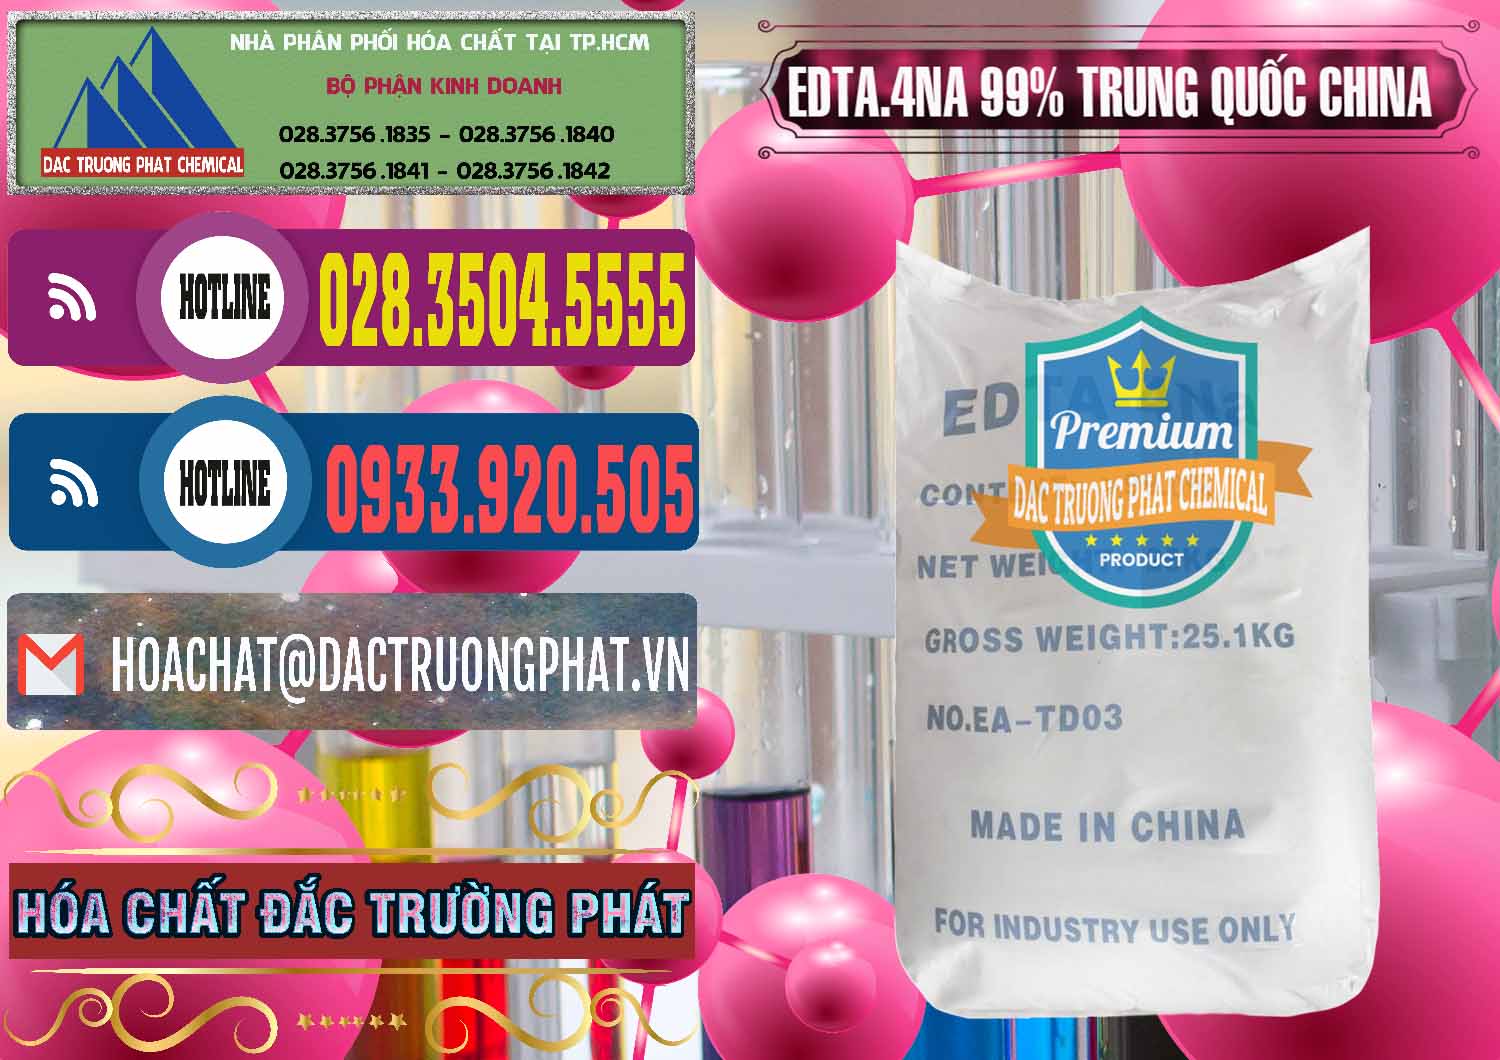 Công ty cung ứng và bán EDTA.4NA - EDTA Muối 99% Trung Quốc China - 0292 - Đơn vị bán và phân phối hóa chất tại TP.HCM - muabanhoachat.com.vn